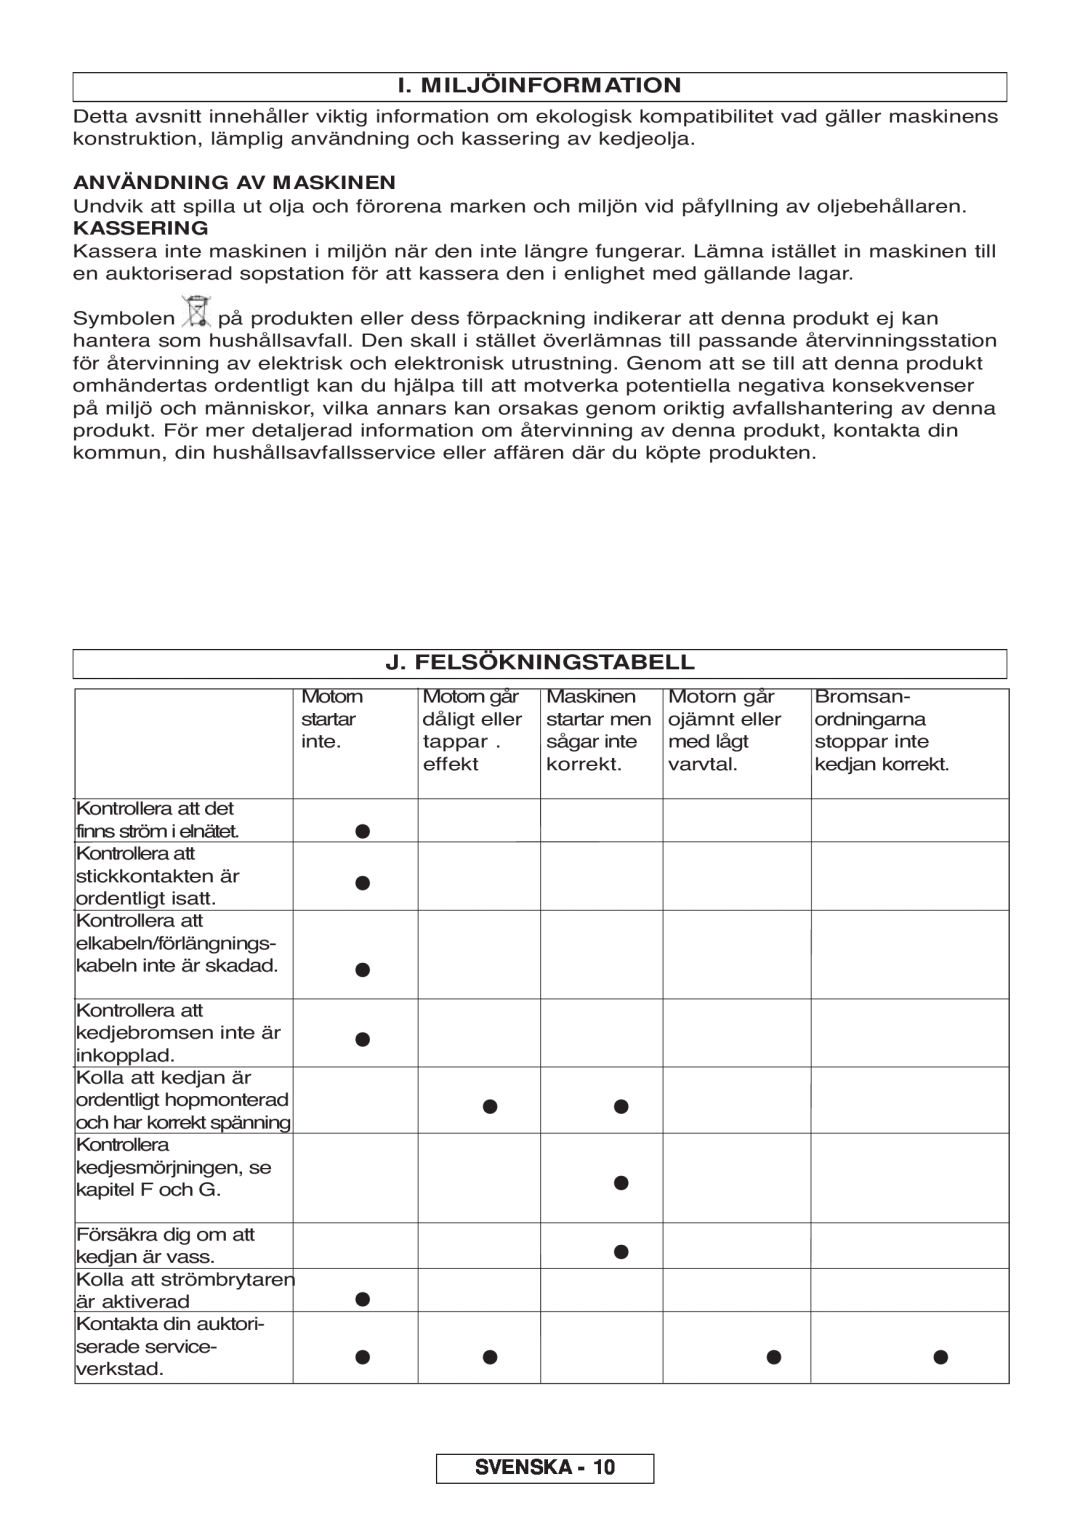 McCulloch 964830401, 964830301 manual I. Miljöinformation, J. Felsökningstabell, Svenska, Användning Av Maskinen, Kassering 